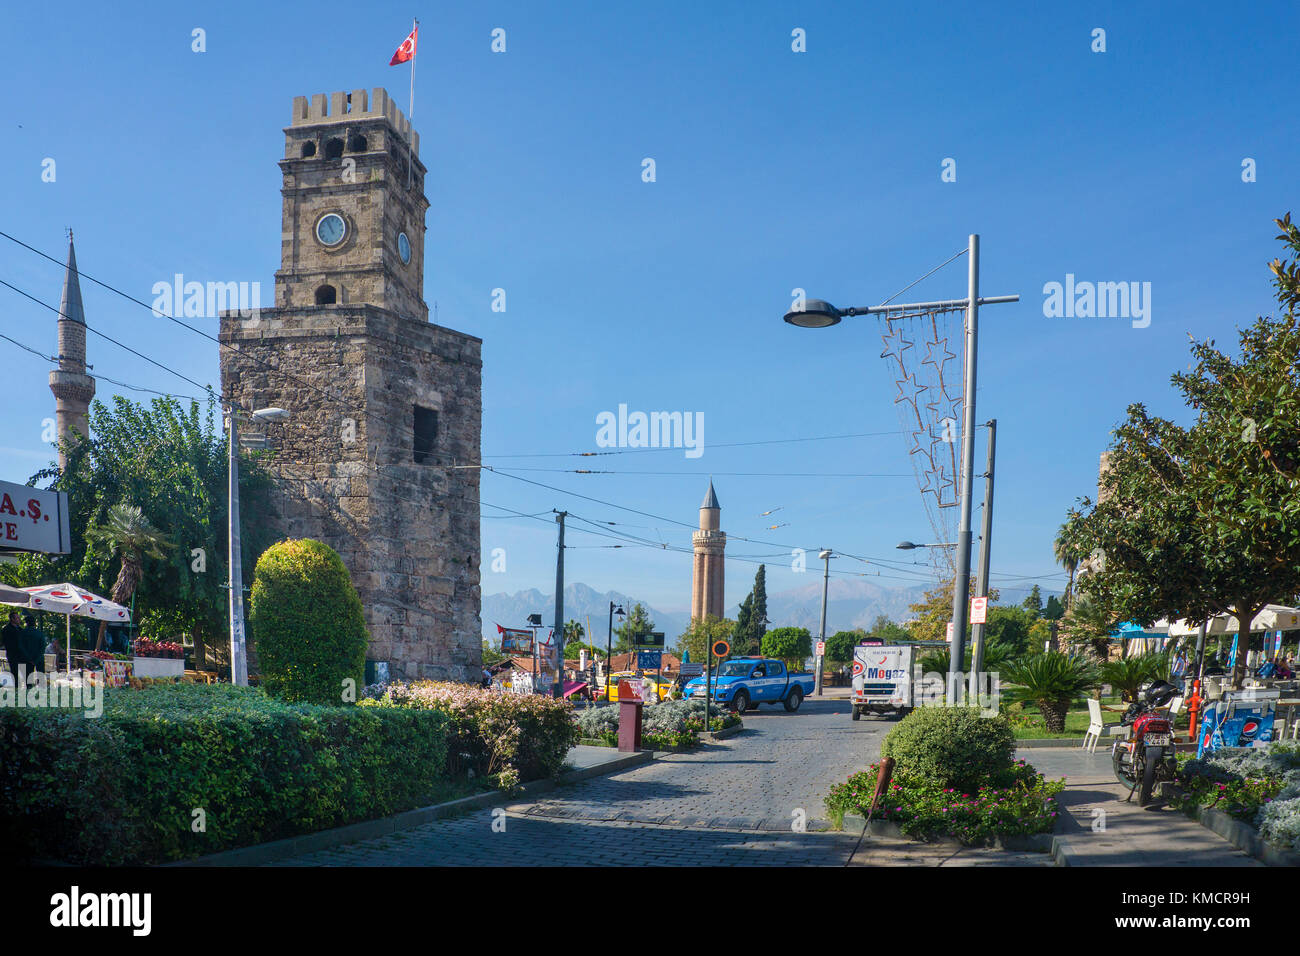 Saat Kulesi, Clock tower, historic center, old town of Antalya,  Kaleici, Antalya, turkish riviera, Turkey Stock Photo